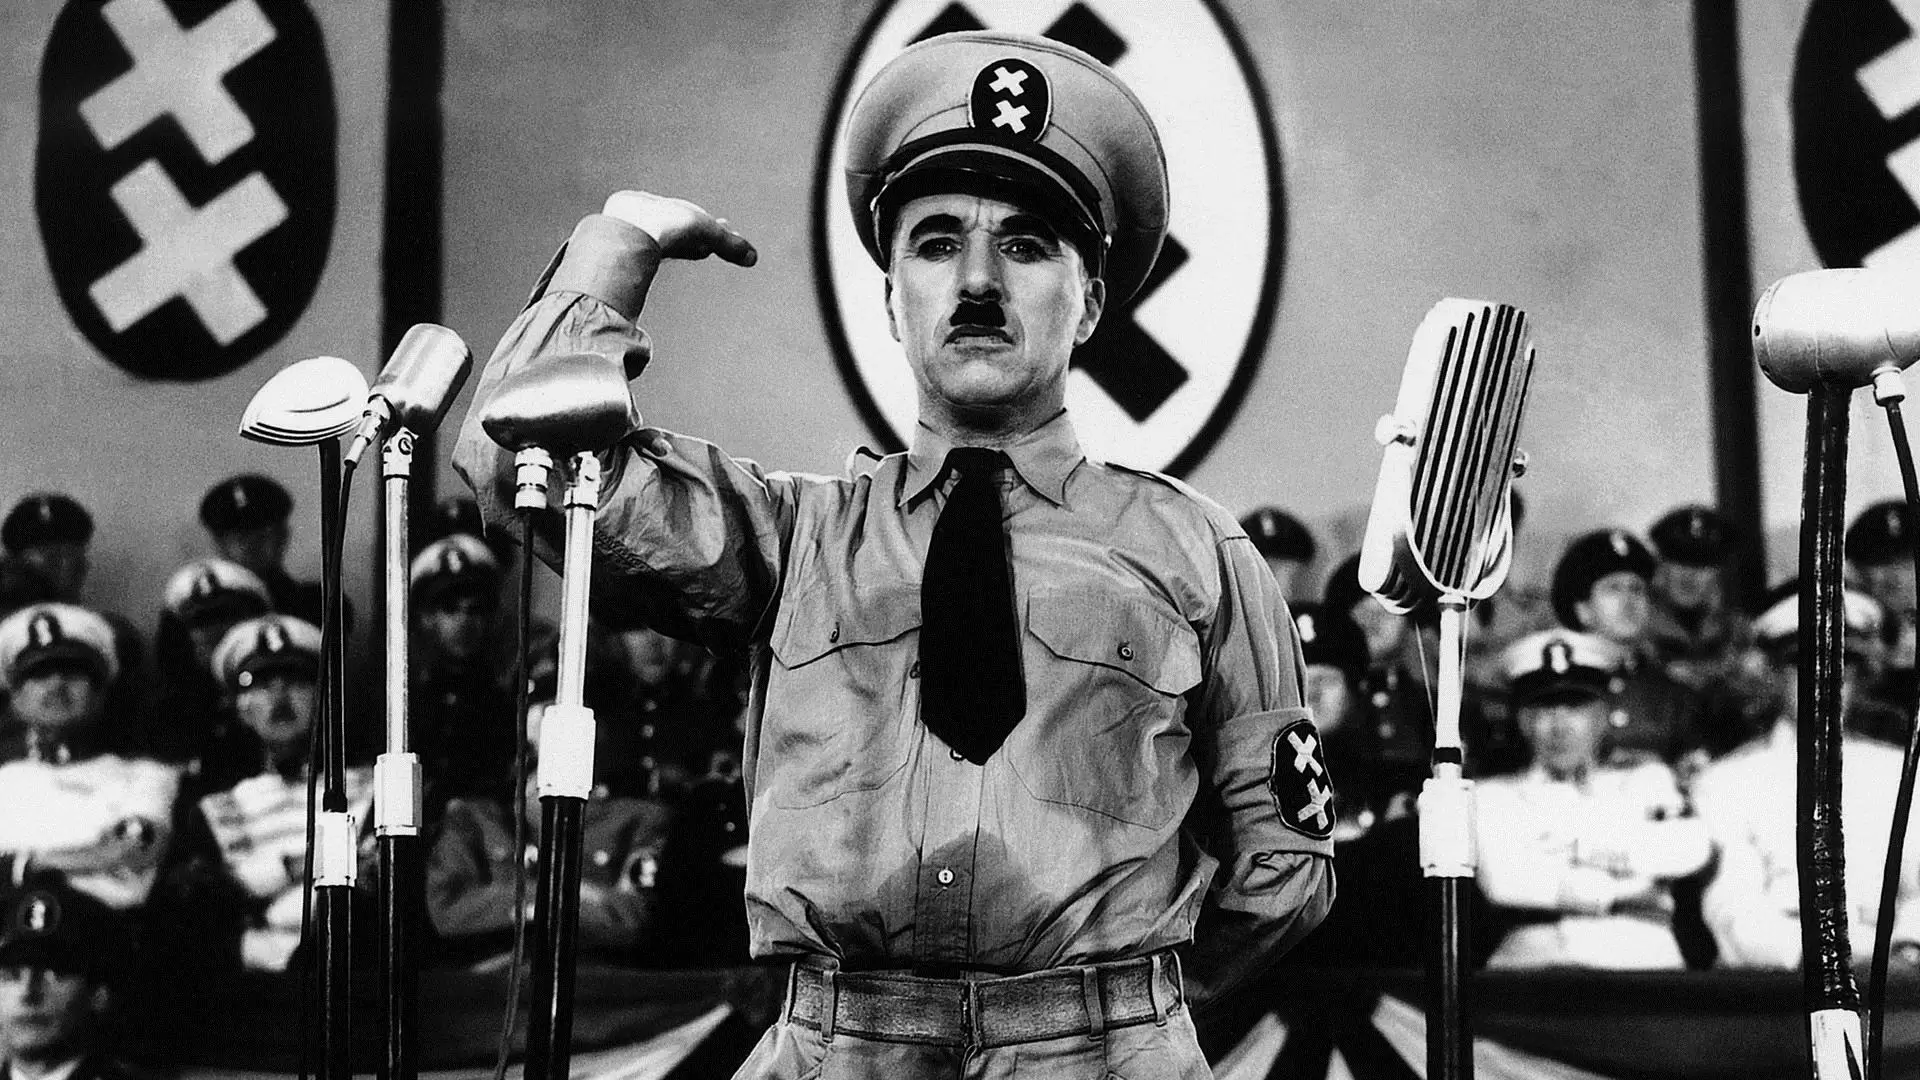 دانلود فیلم The Great Dictator 1940 (دیکتاتور بزرگ) با تماشای آنلاین